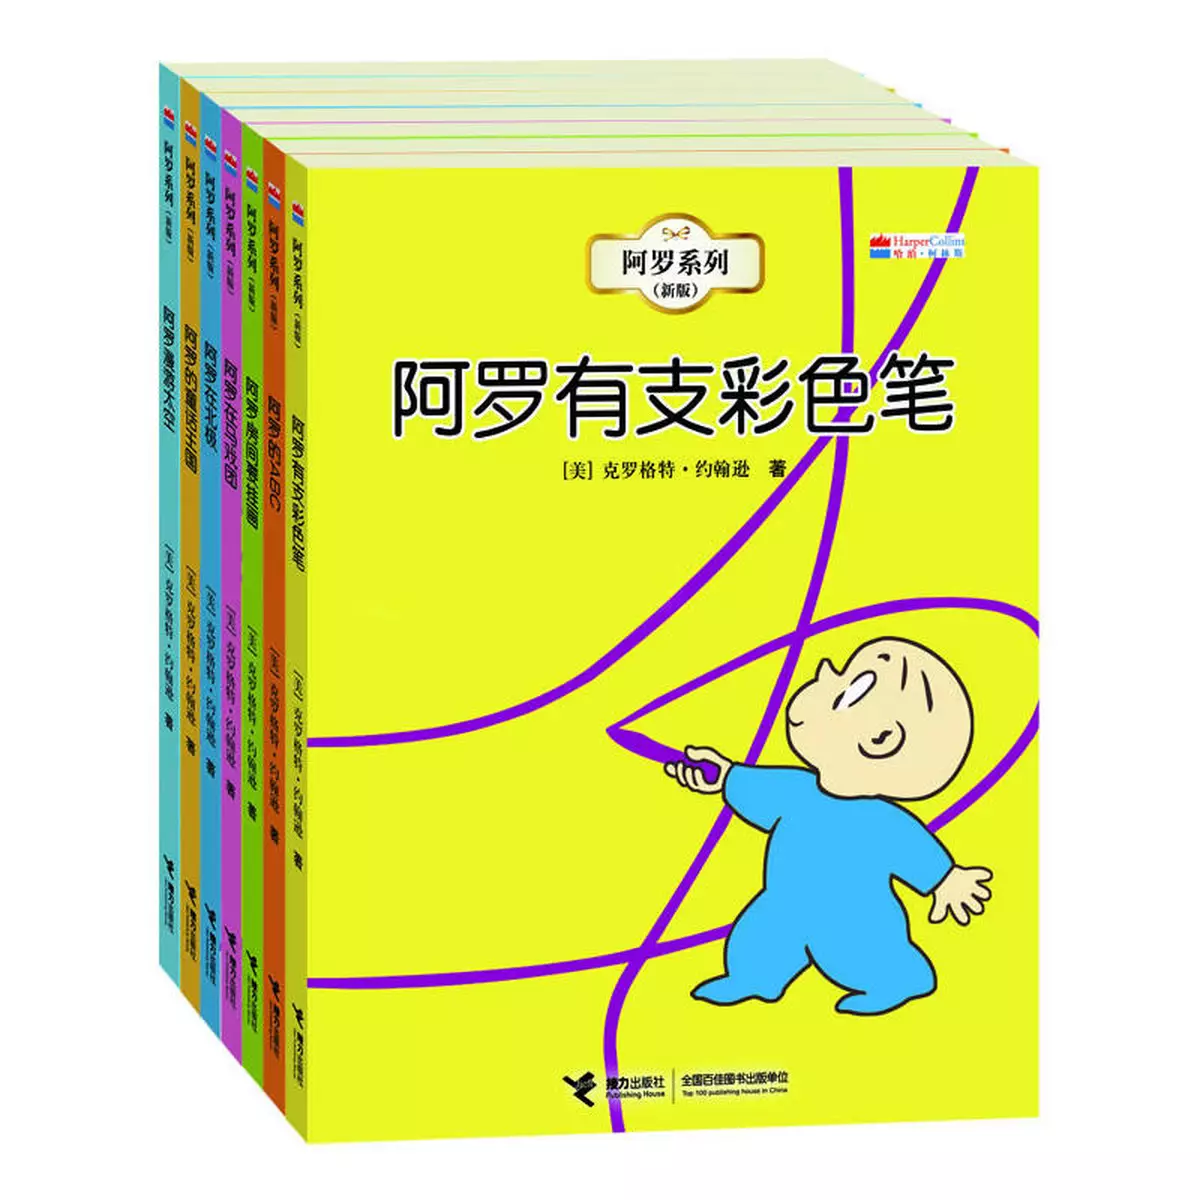 香港的一個中學老師竟然買了萬多元的簡體字書，一定要睇睇…